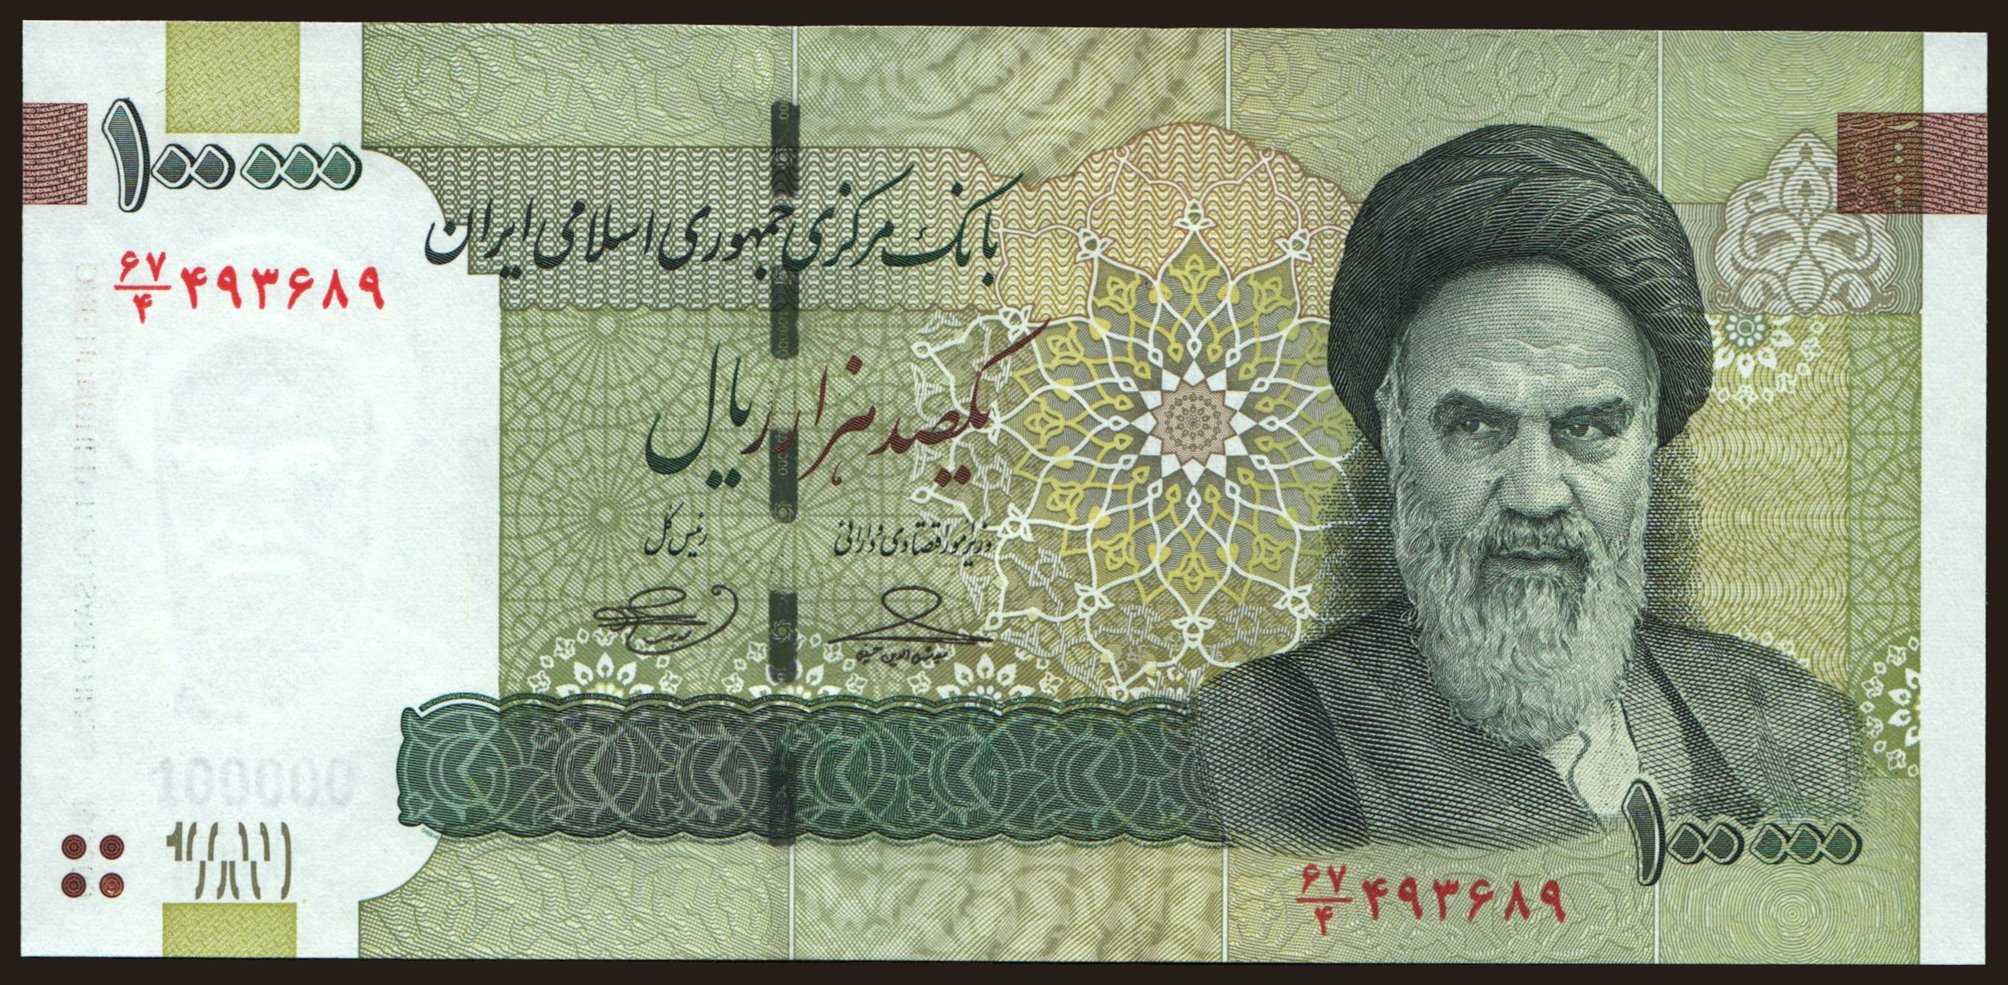 100.000 rials, 2010